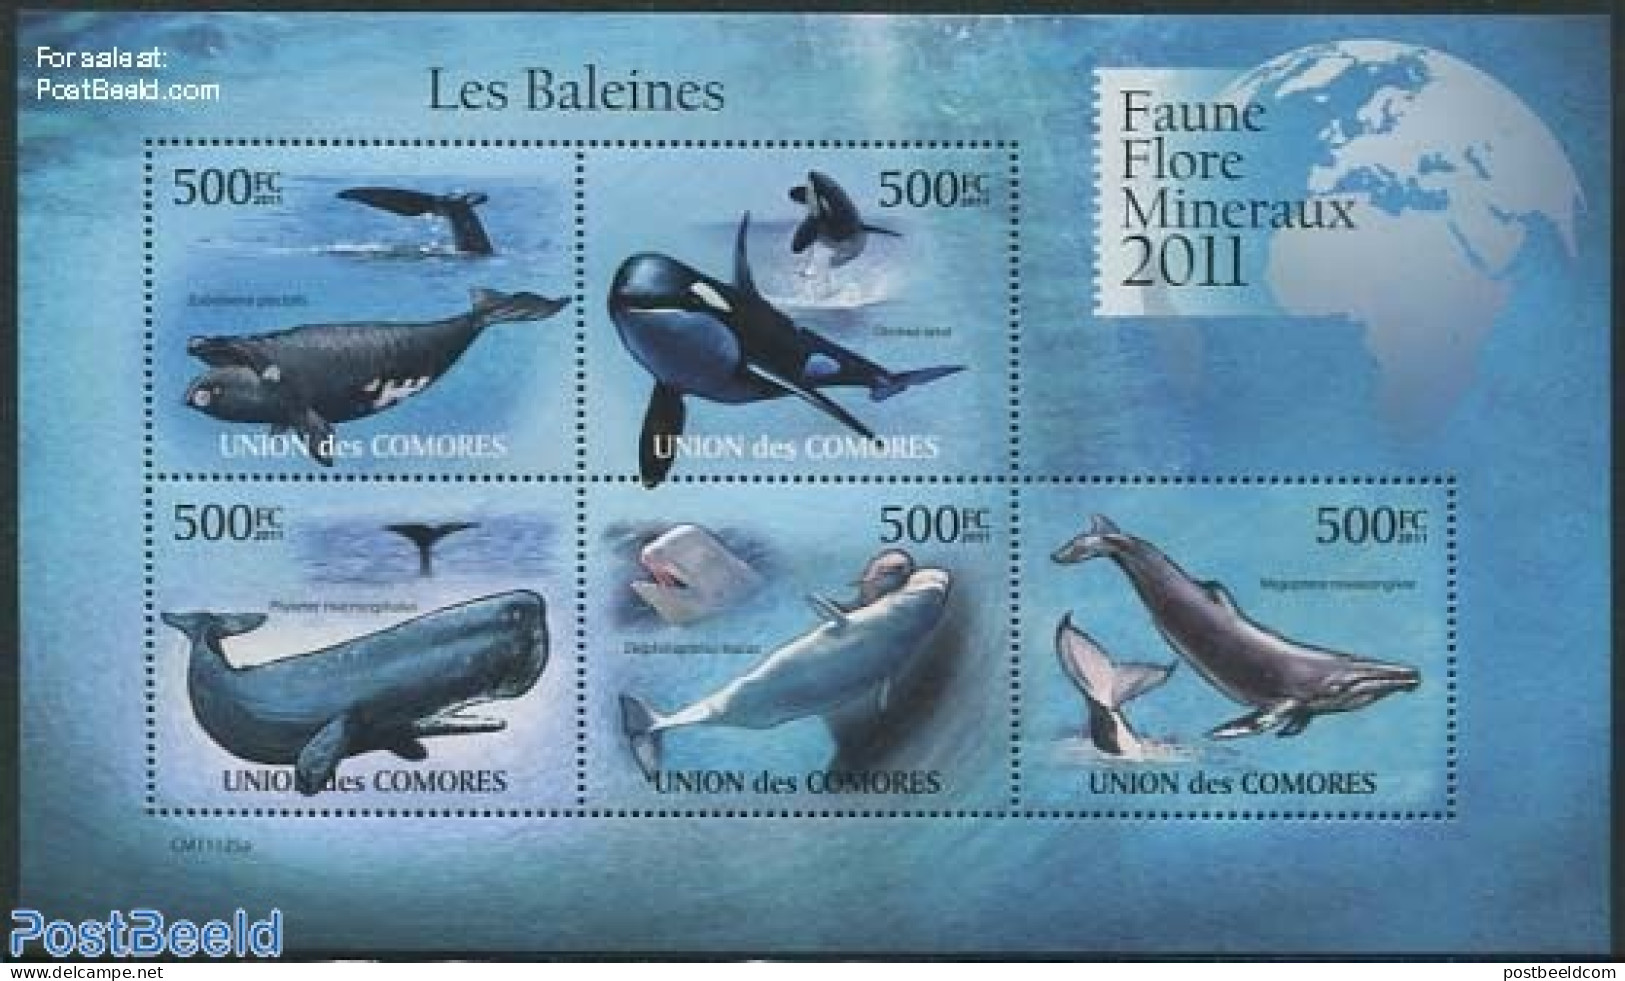 Comoros 2011 Whales 5v M/s, Mint NH, Nature - Sea Mammals - Comores (1975-...)